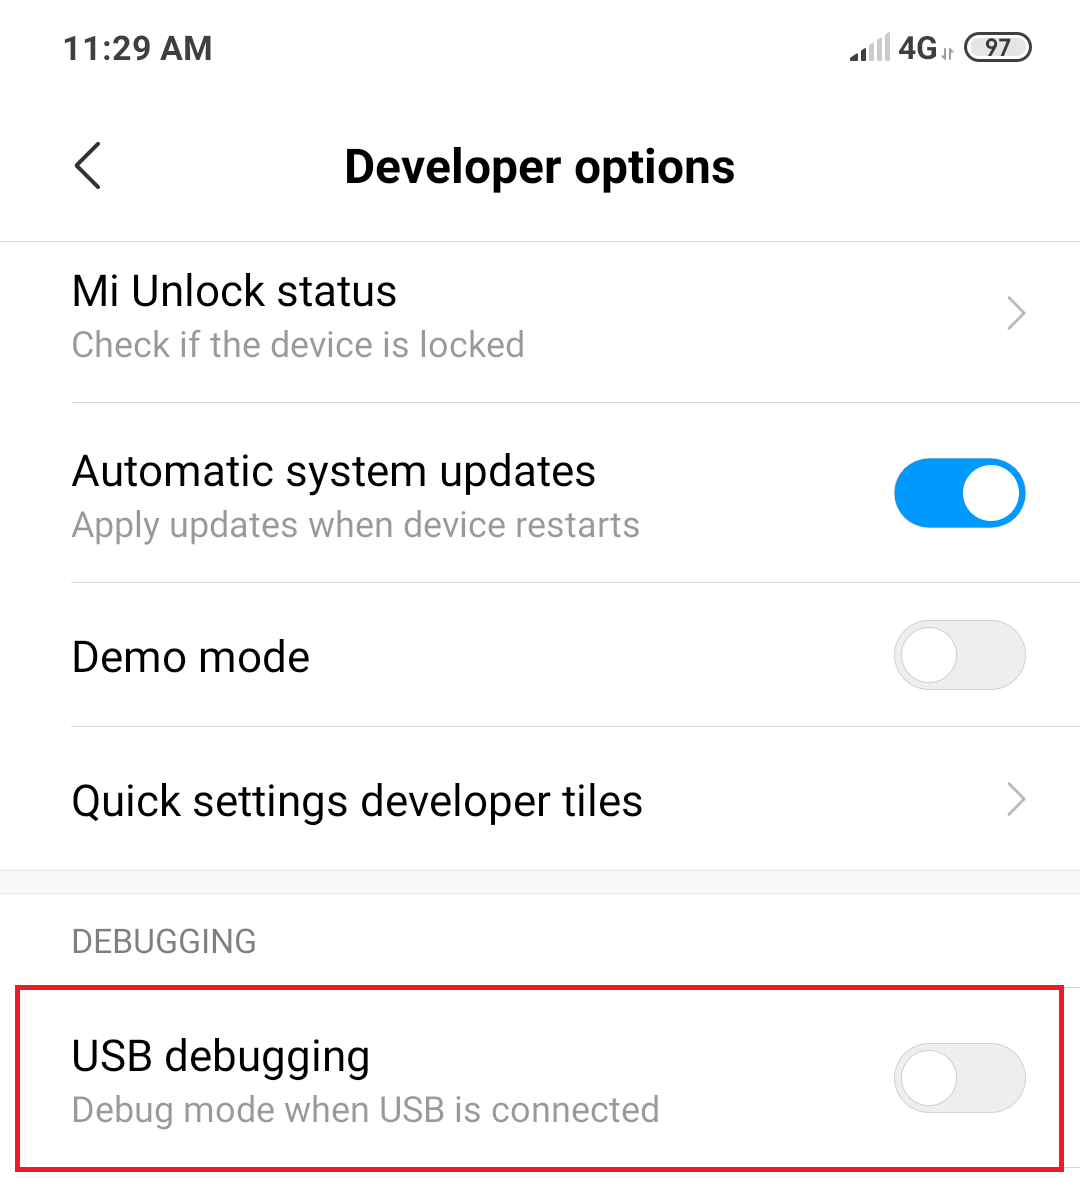 Under developer options, look for USB debugging